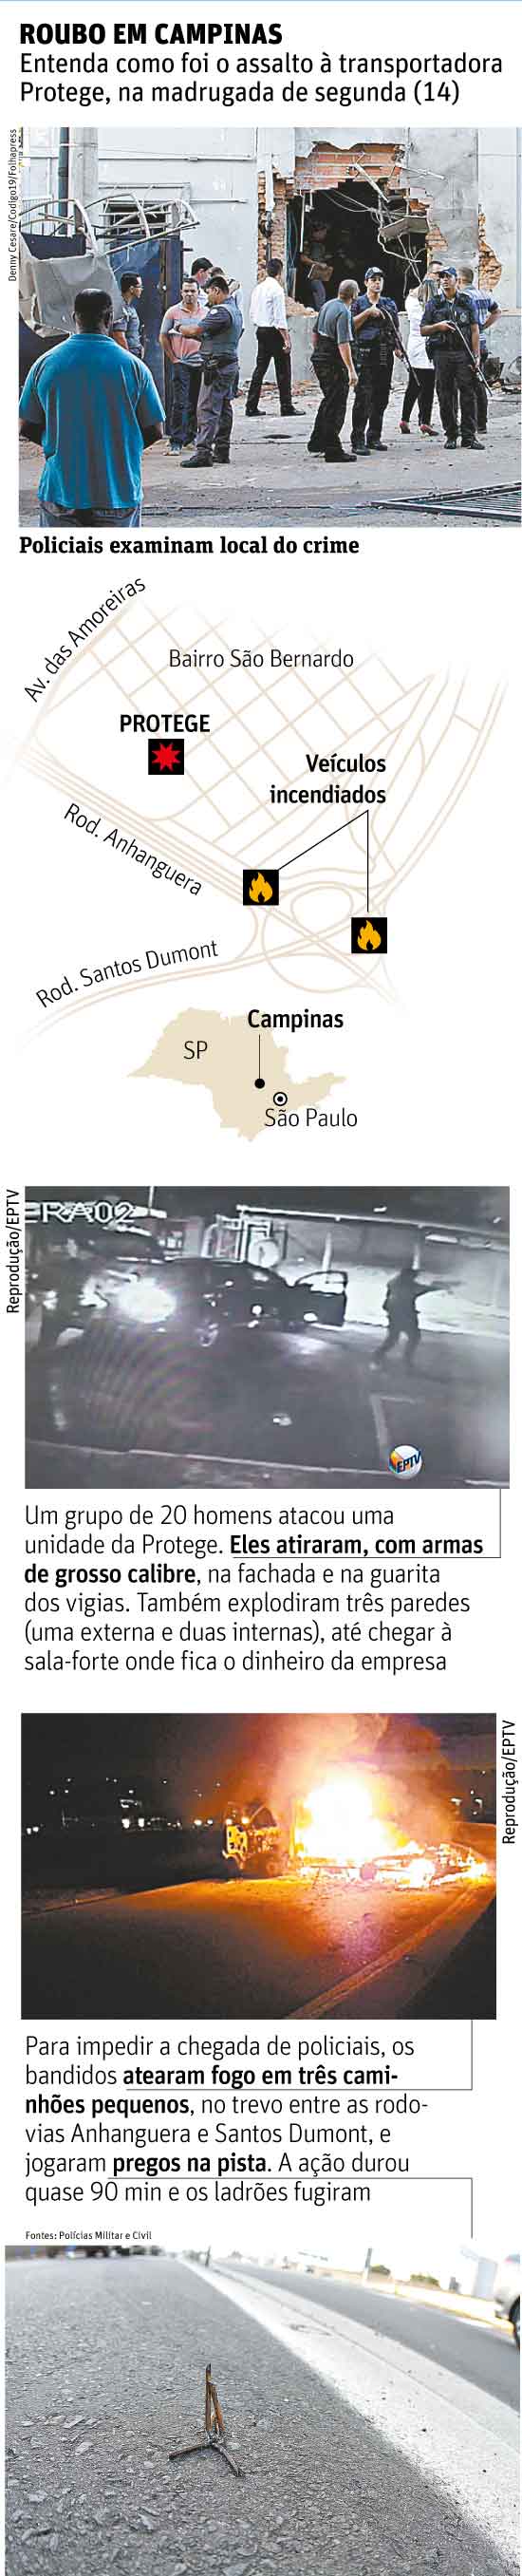 Entenda como foi o assalto  transportadora Protege, na madrugada de segunda (14), em Campinas